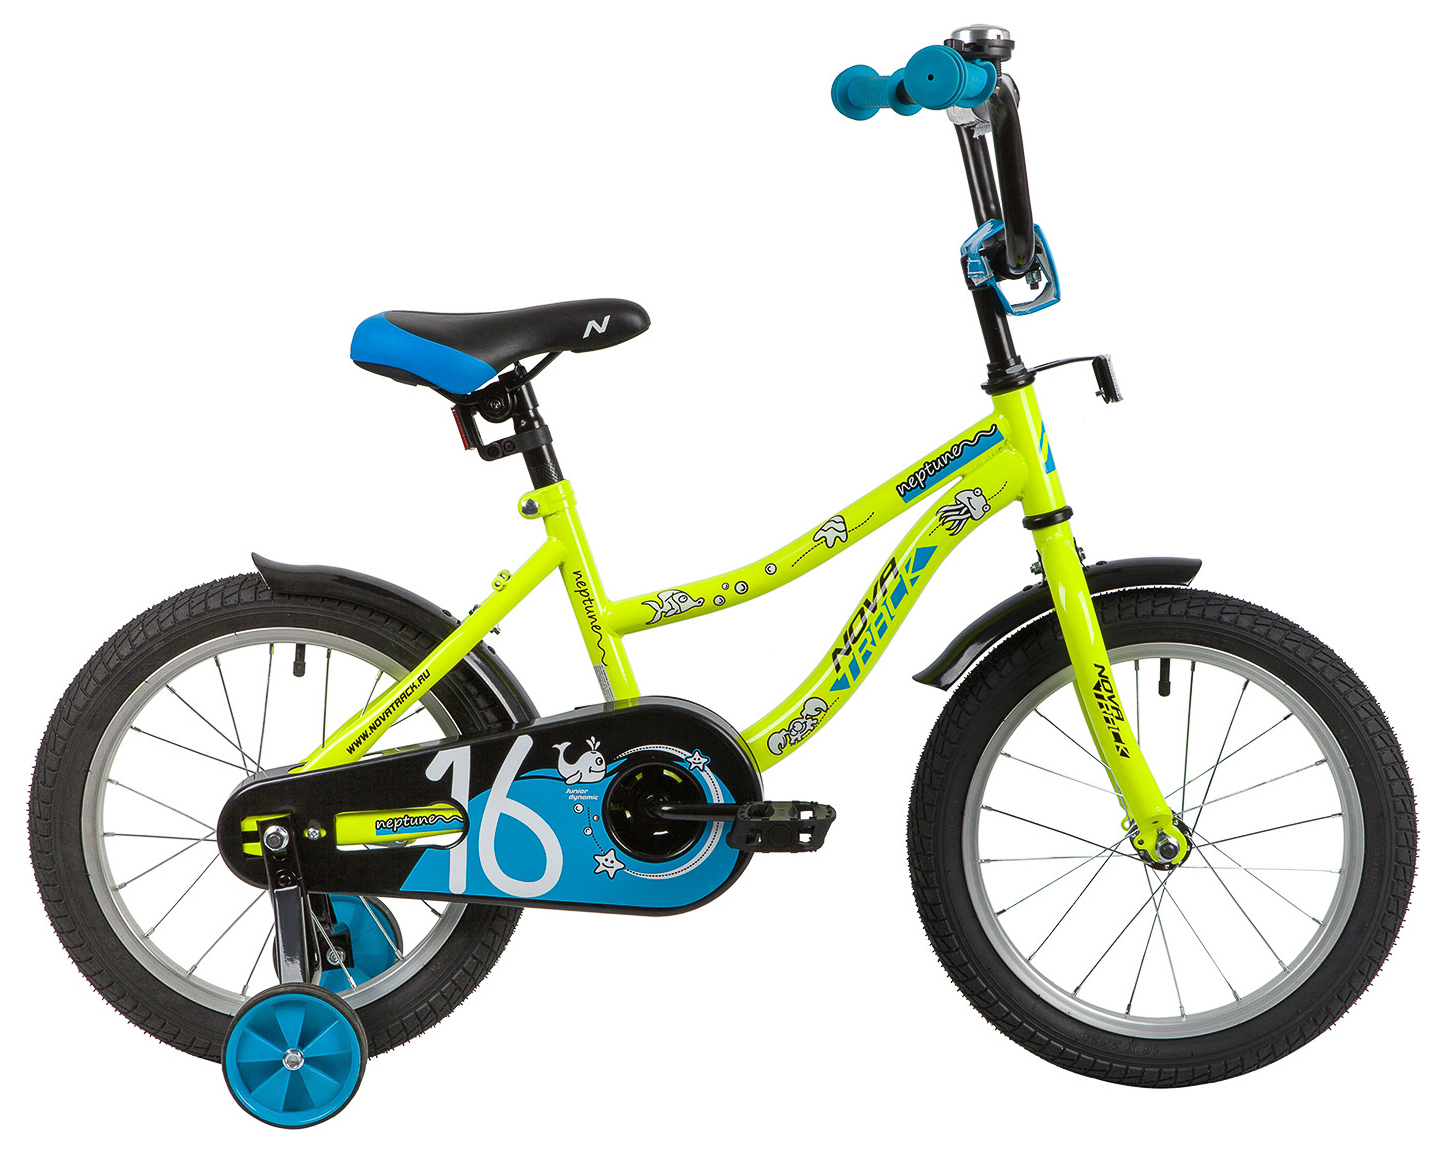  Отзывы о Детском велосипеде Novatrack Neptune 16 2020